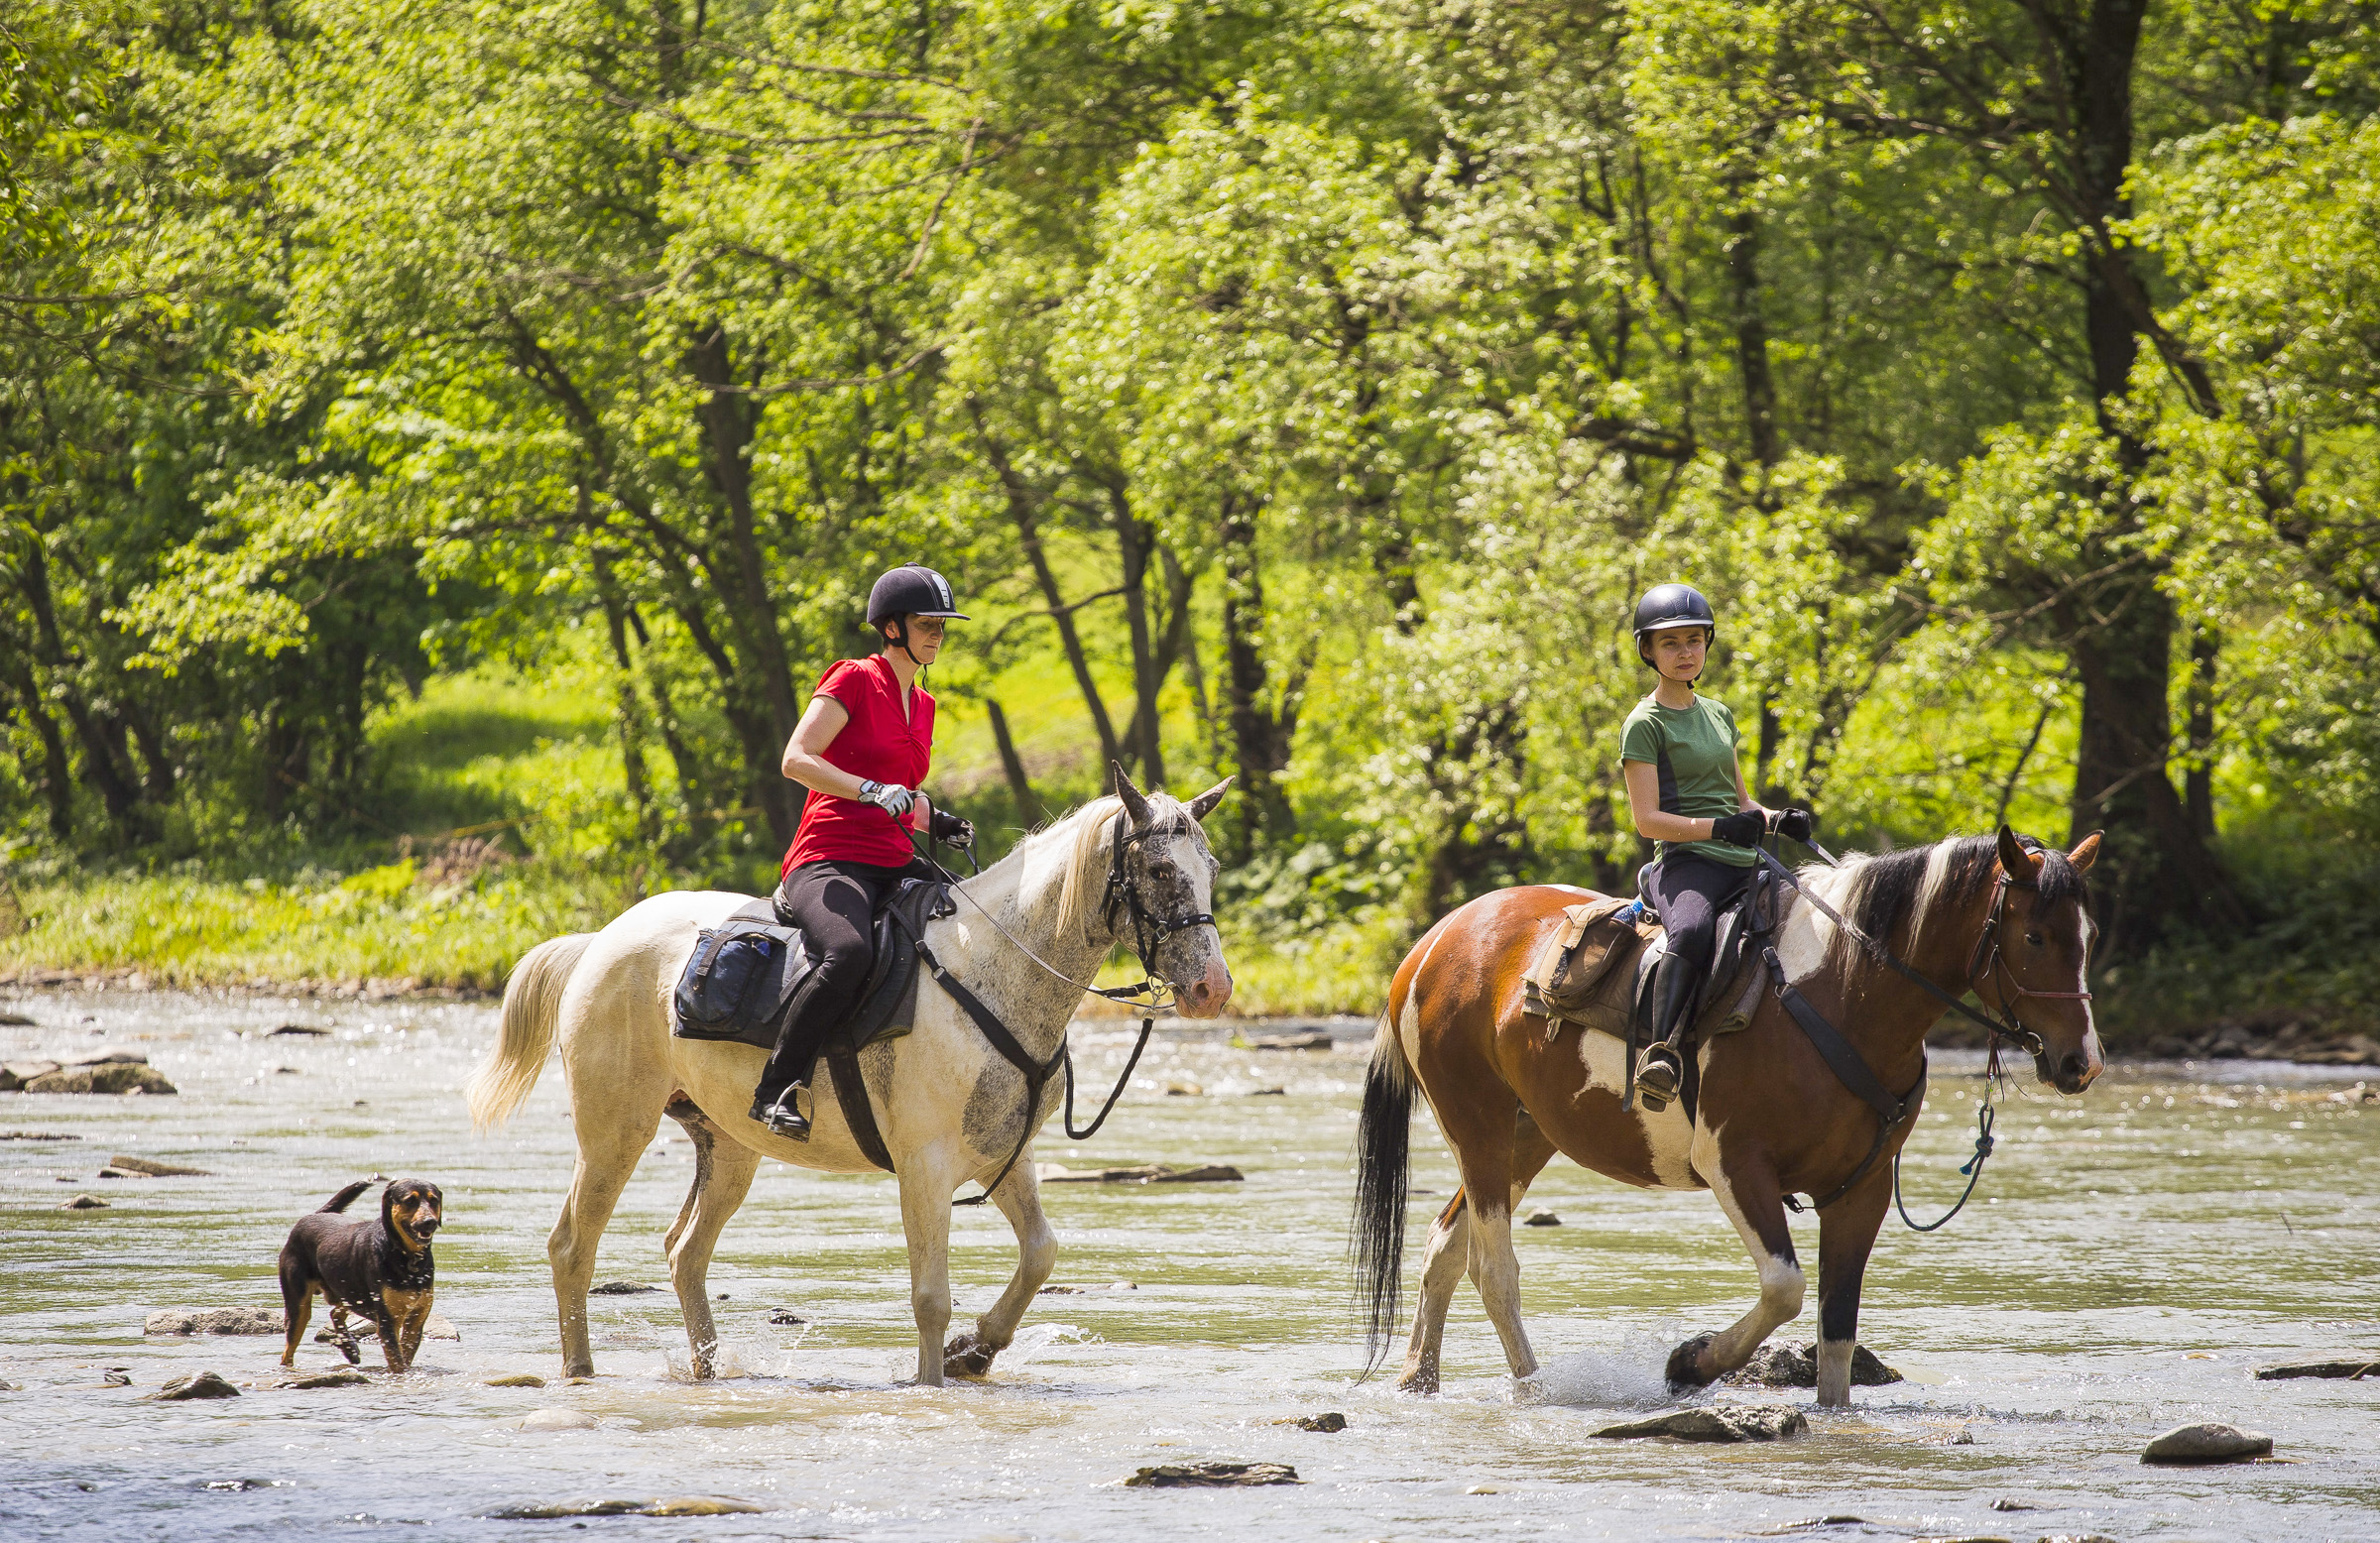 Letni dzień. Dwie kobiety przeprawiają się konno przez rzeką. Za nimi biegnie pies. W tle zagajnik.